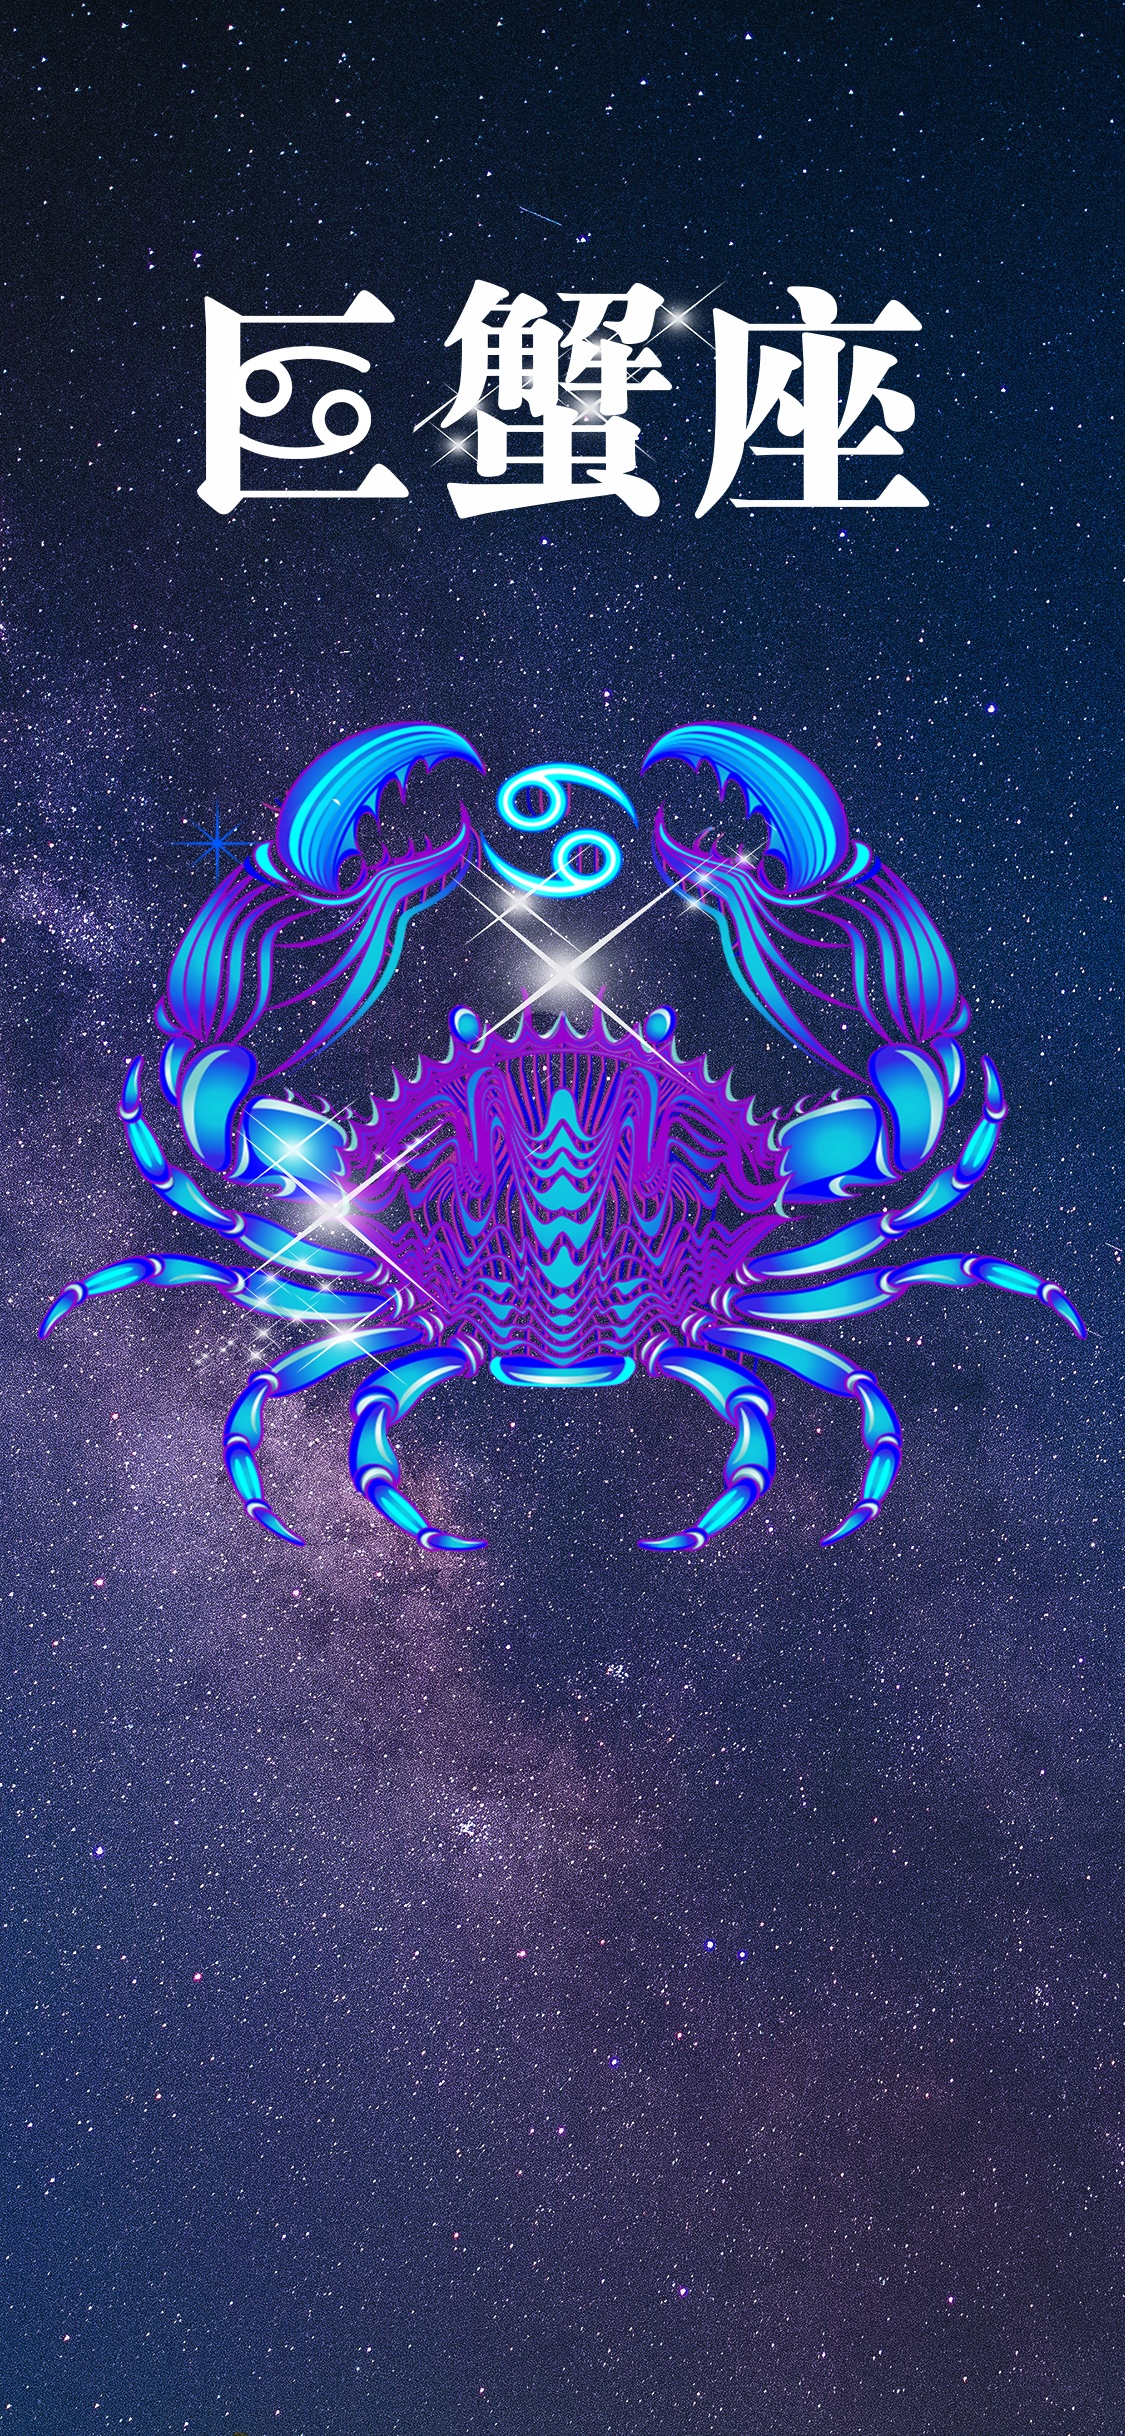 巨蟹座的符号是螃蟹的一对钳子